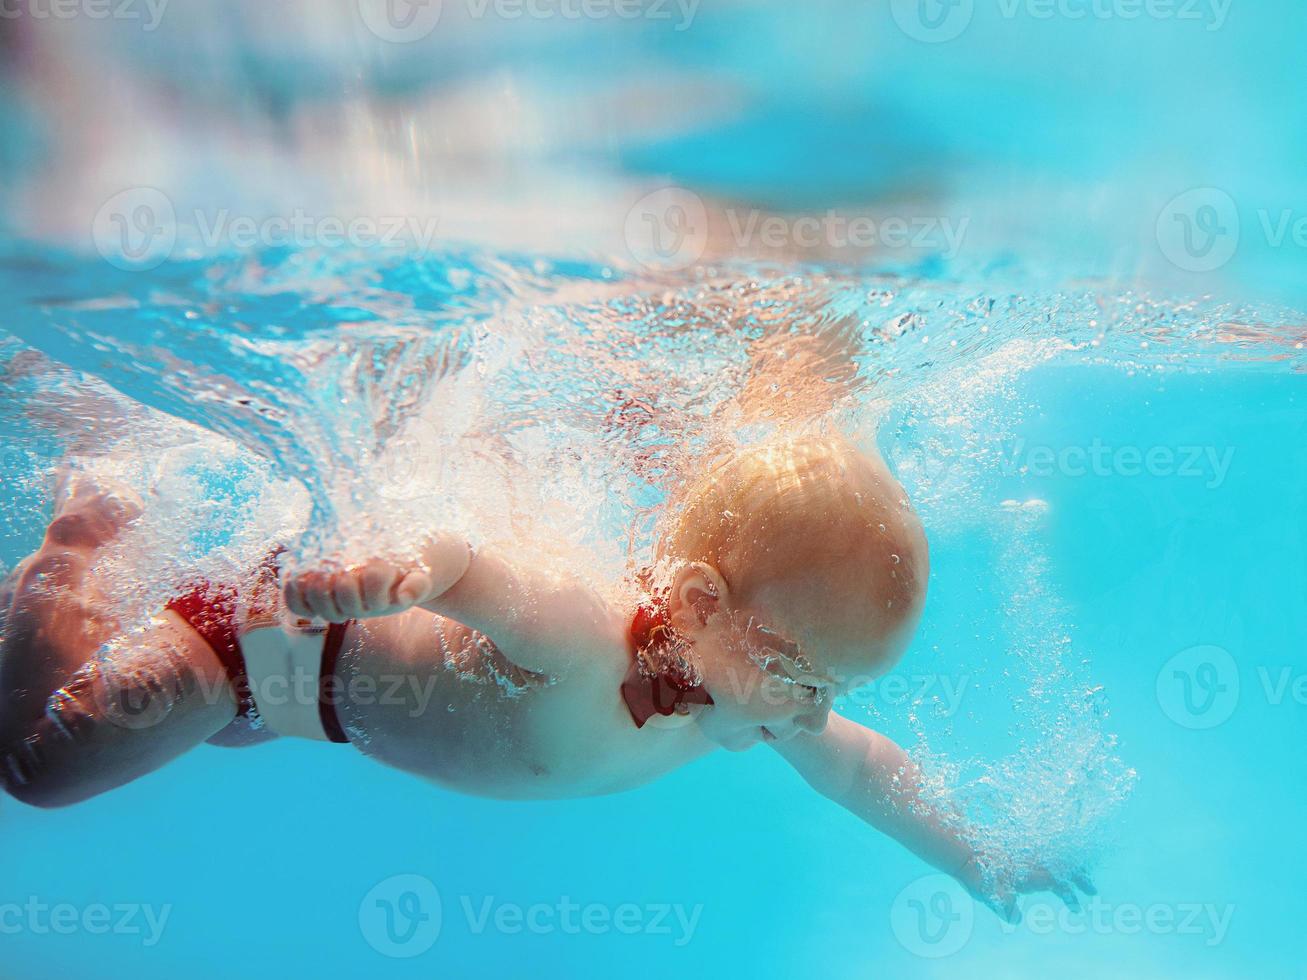 menino infantil com borboleta vermelha mergulhando debaixo d'água na piscina, aprenda a nadar. conceito de esporte e férias foto